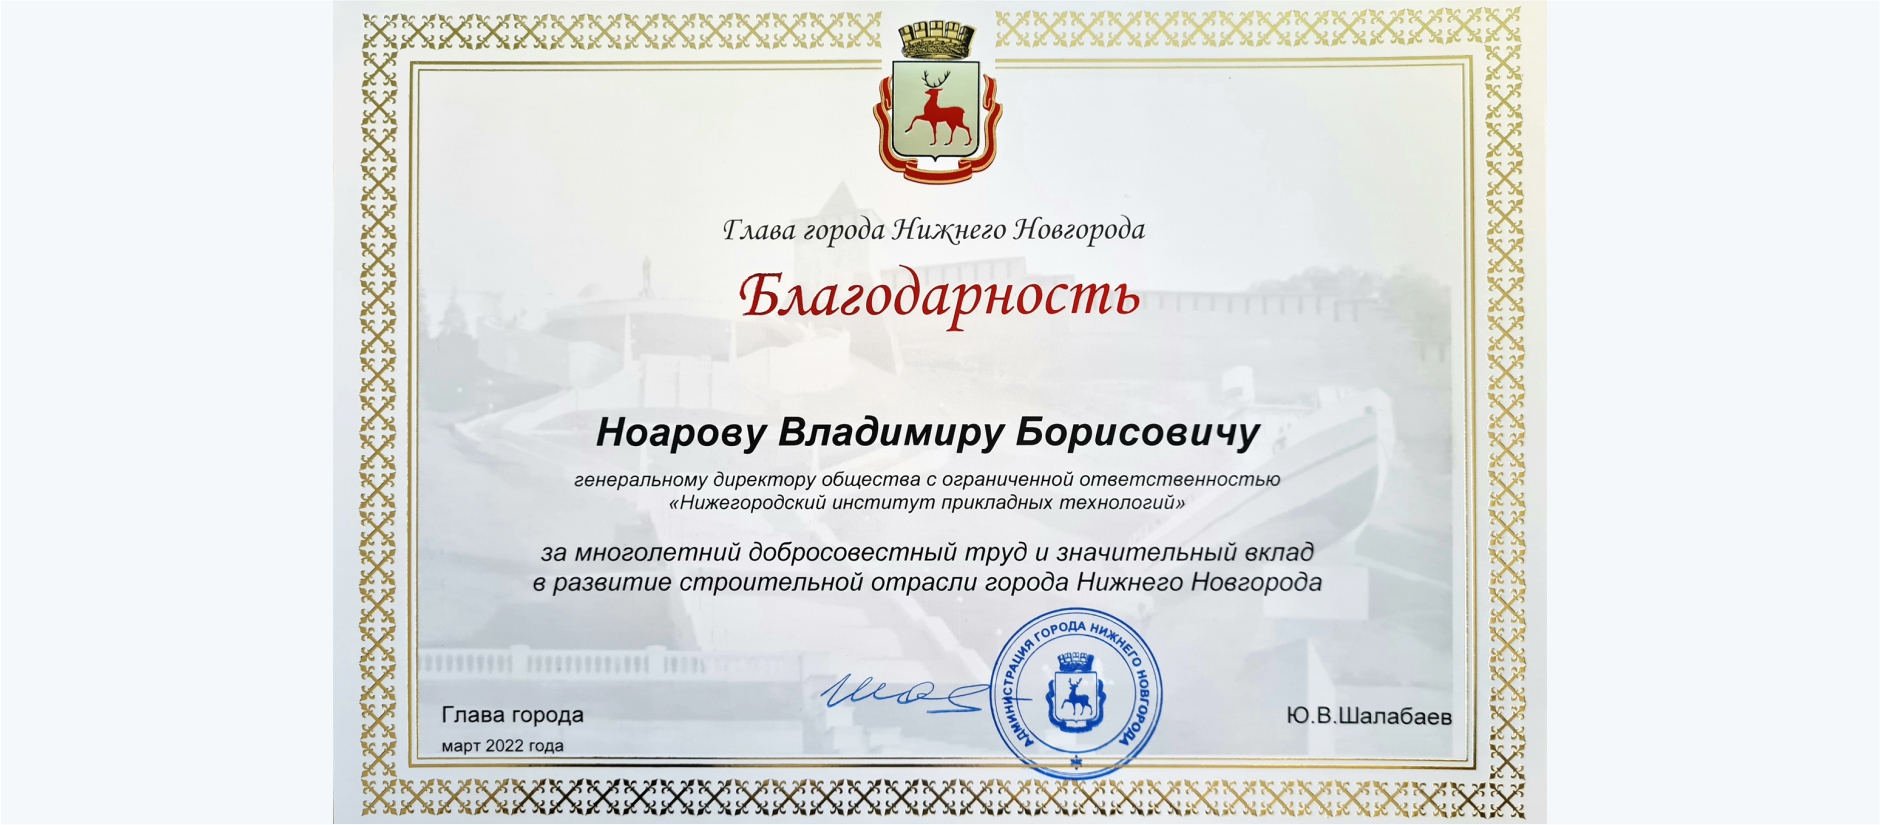 Благодарность от главы Нижнего Новгорода